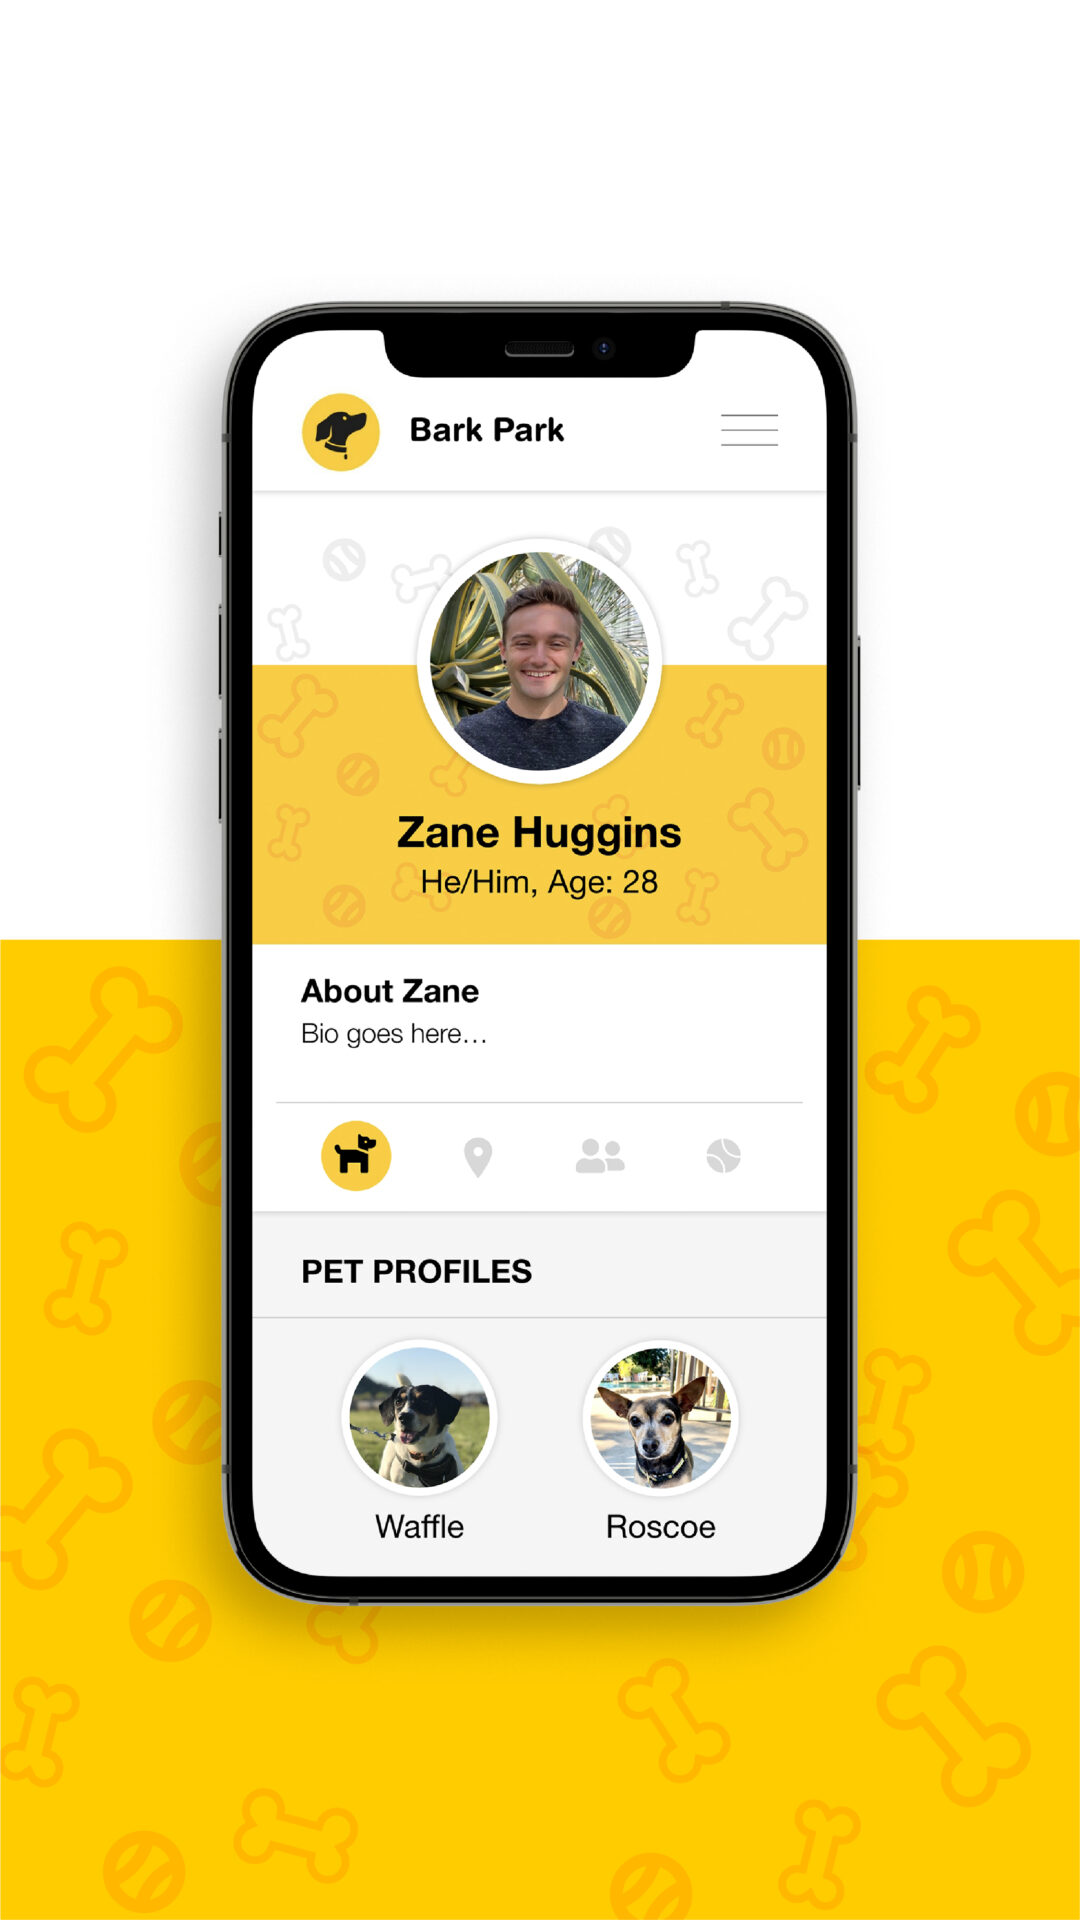 Bark Park app mocked up on an iPhone